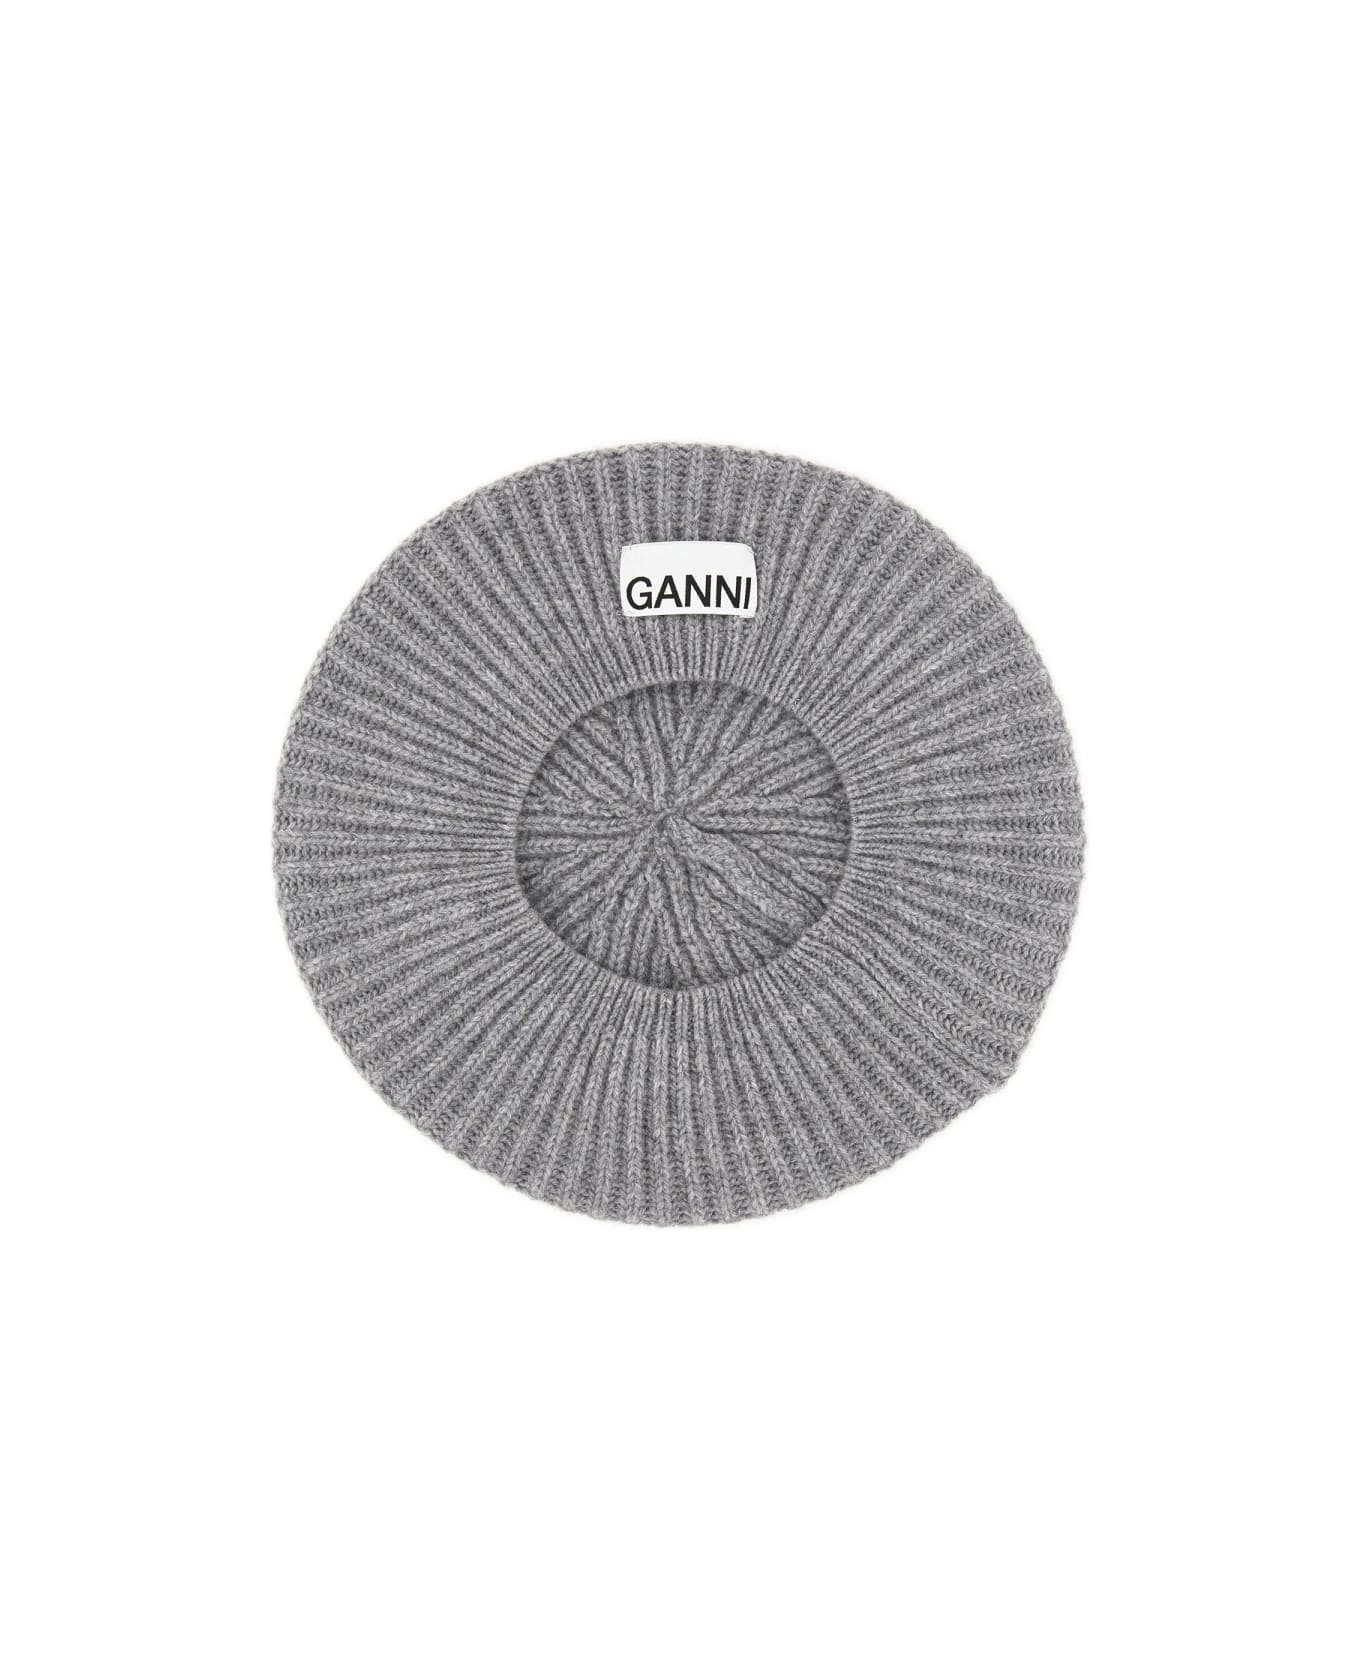 Ganni Ribbed Knit Beanie - PALOMA MELANGE